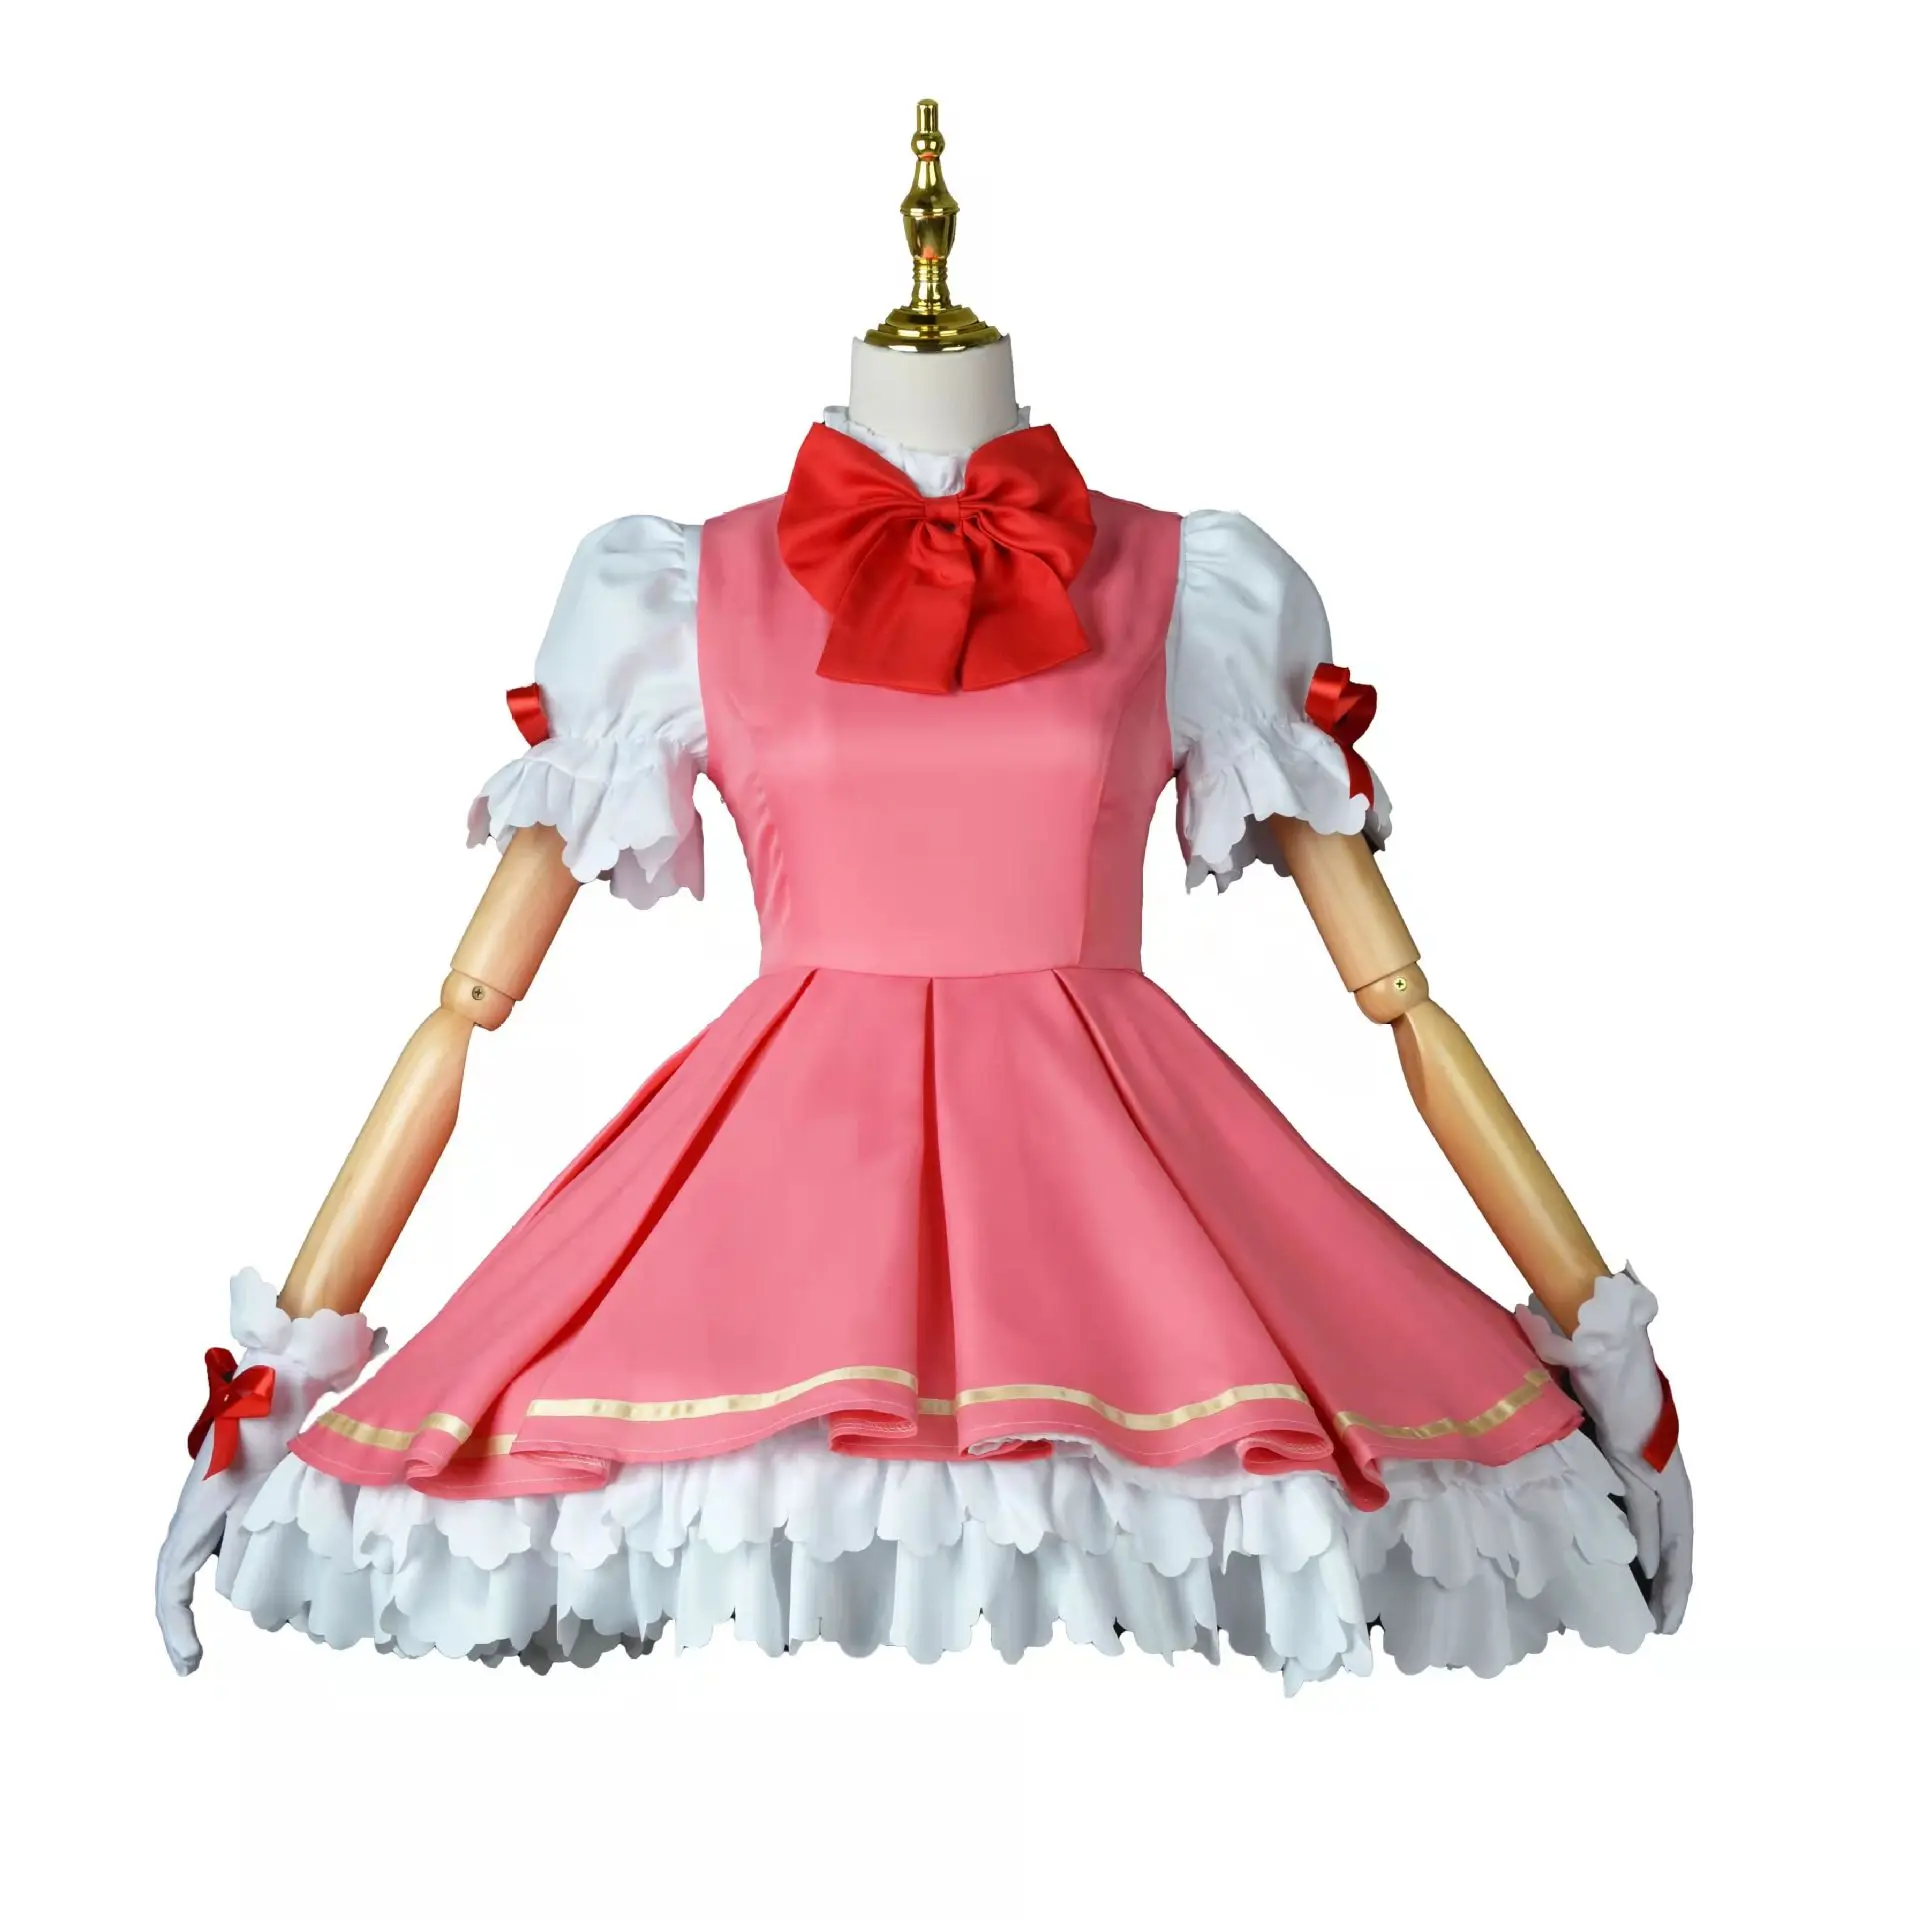 Variedad Sakura Encanto niña vestido Cos ropa traje Sakura rojo y blanco batalla traje Cosplay Anime disfraz